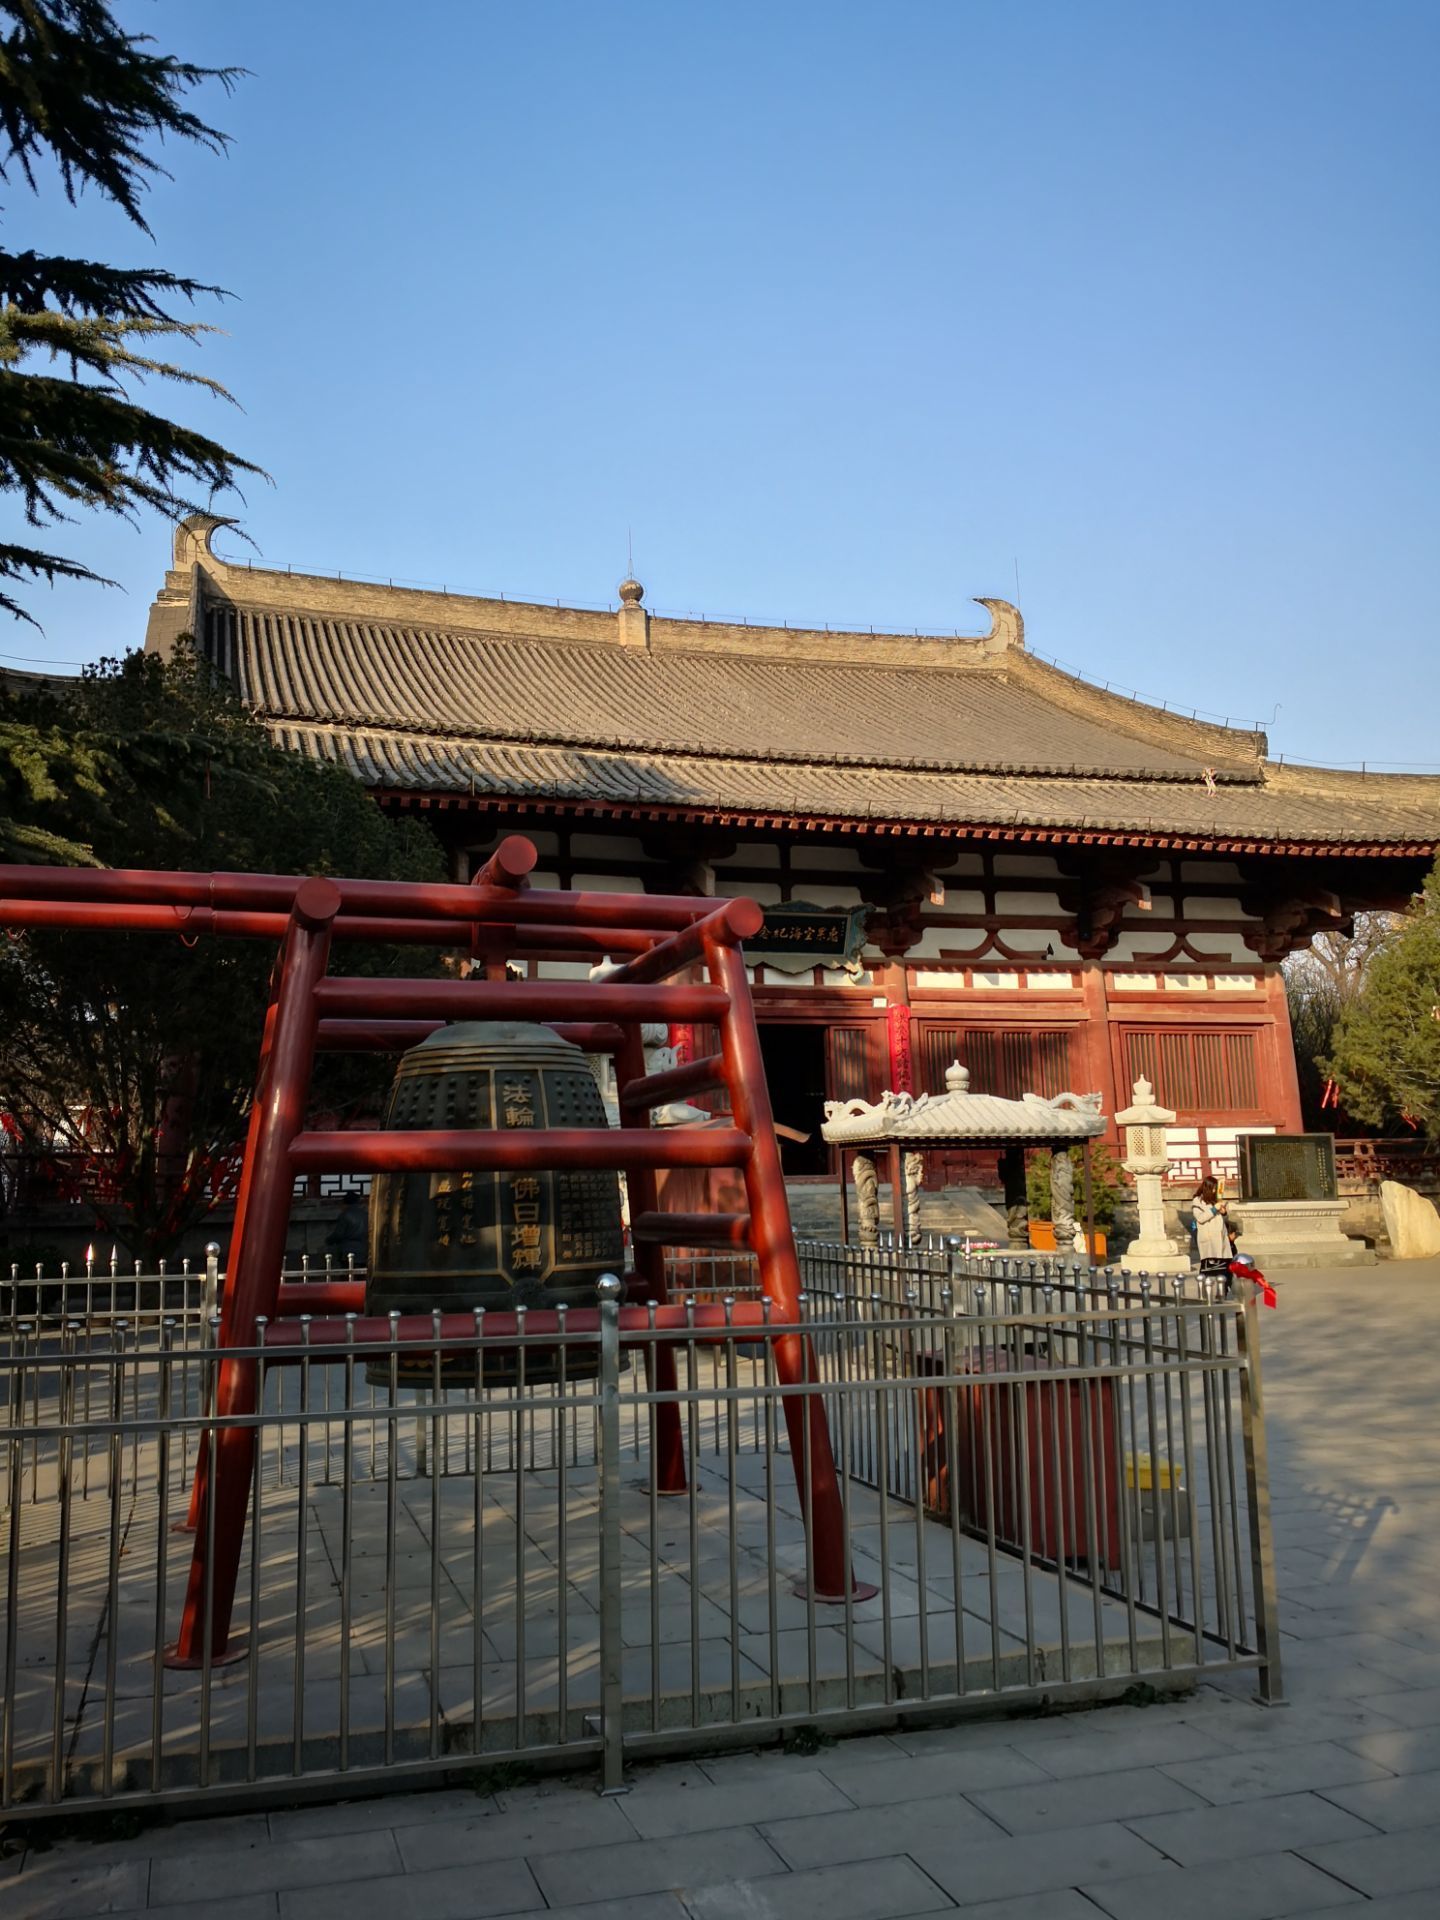 青龙寺是著名的日本高僧空海曾经修行的地方,后来回到日本之后创立东